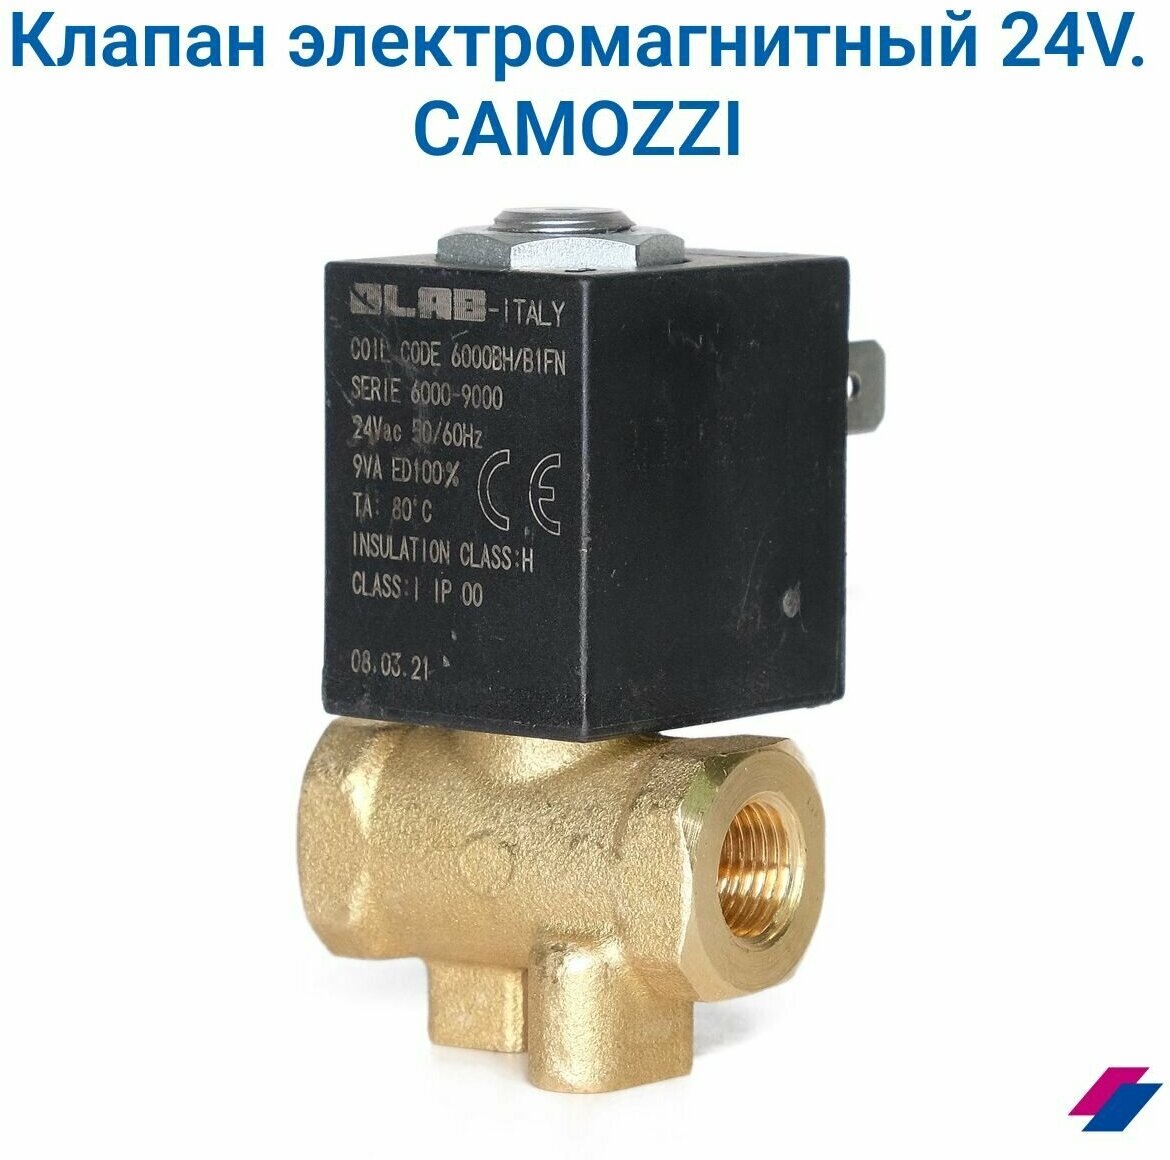 Клапан электромагнитный 24V AC 5946/P. CAMOZZI